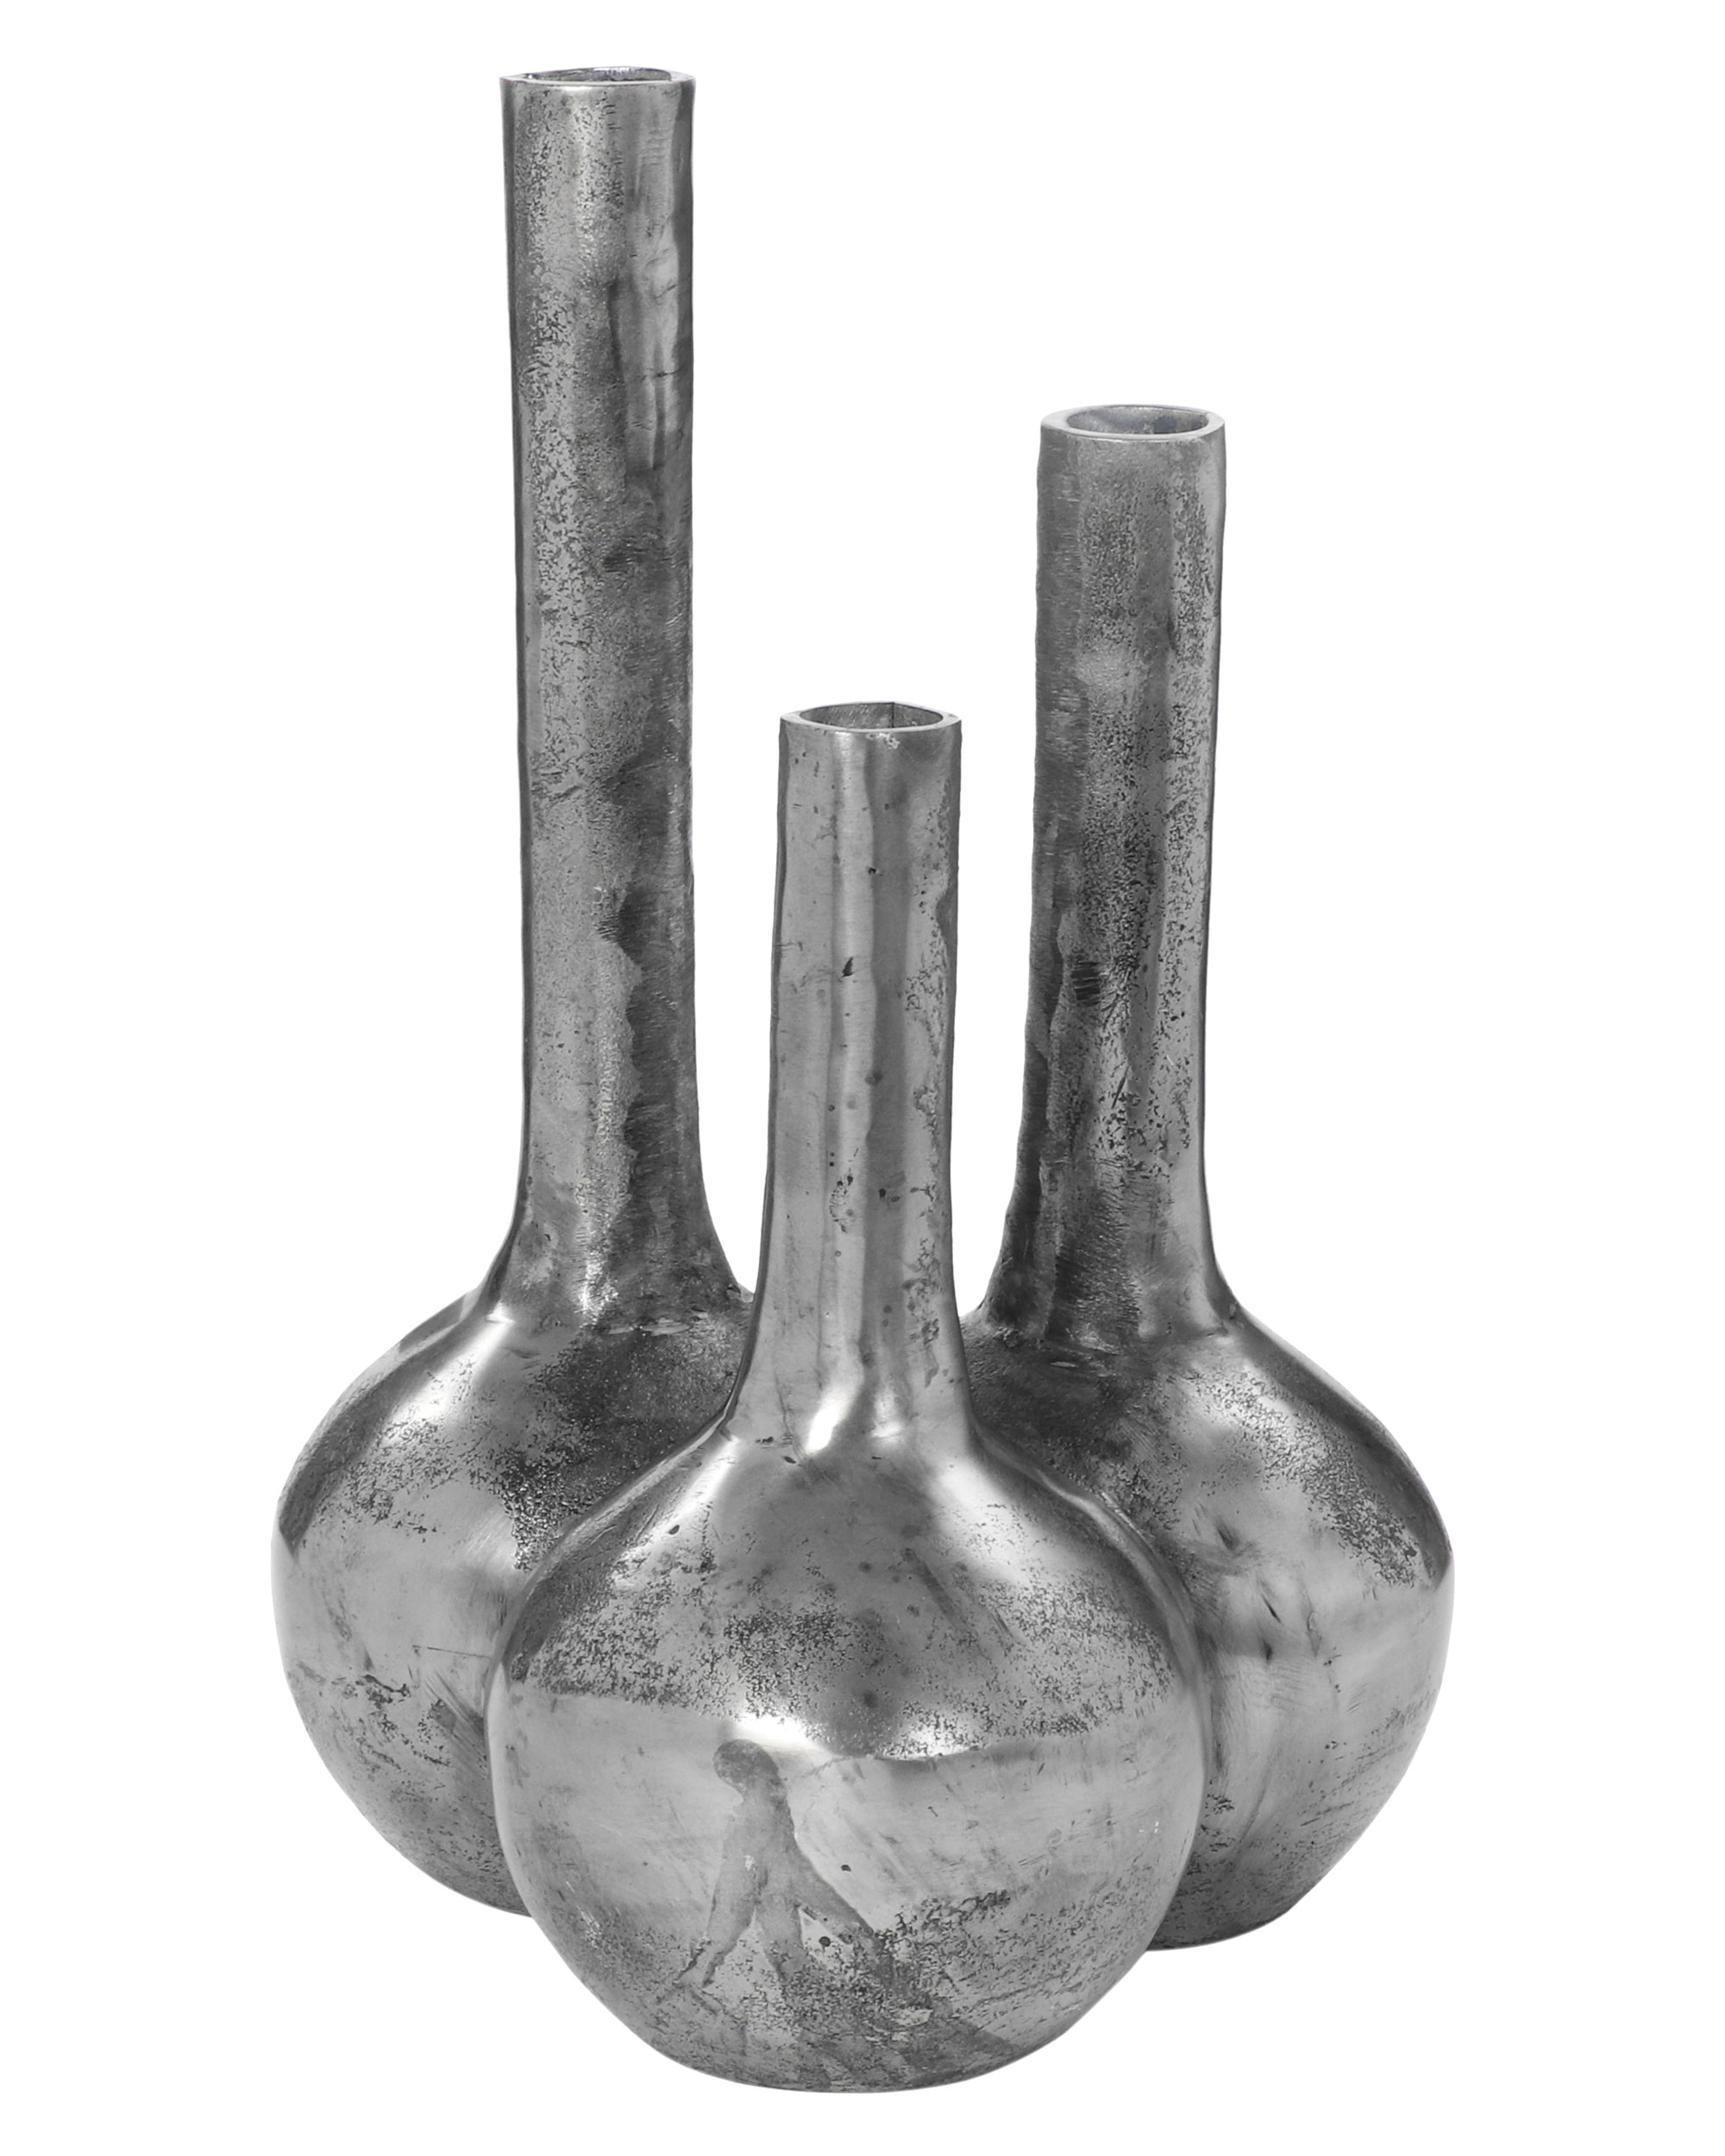 Vase Alu Raw Nickel bauchig 28x28x45cm